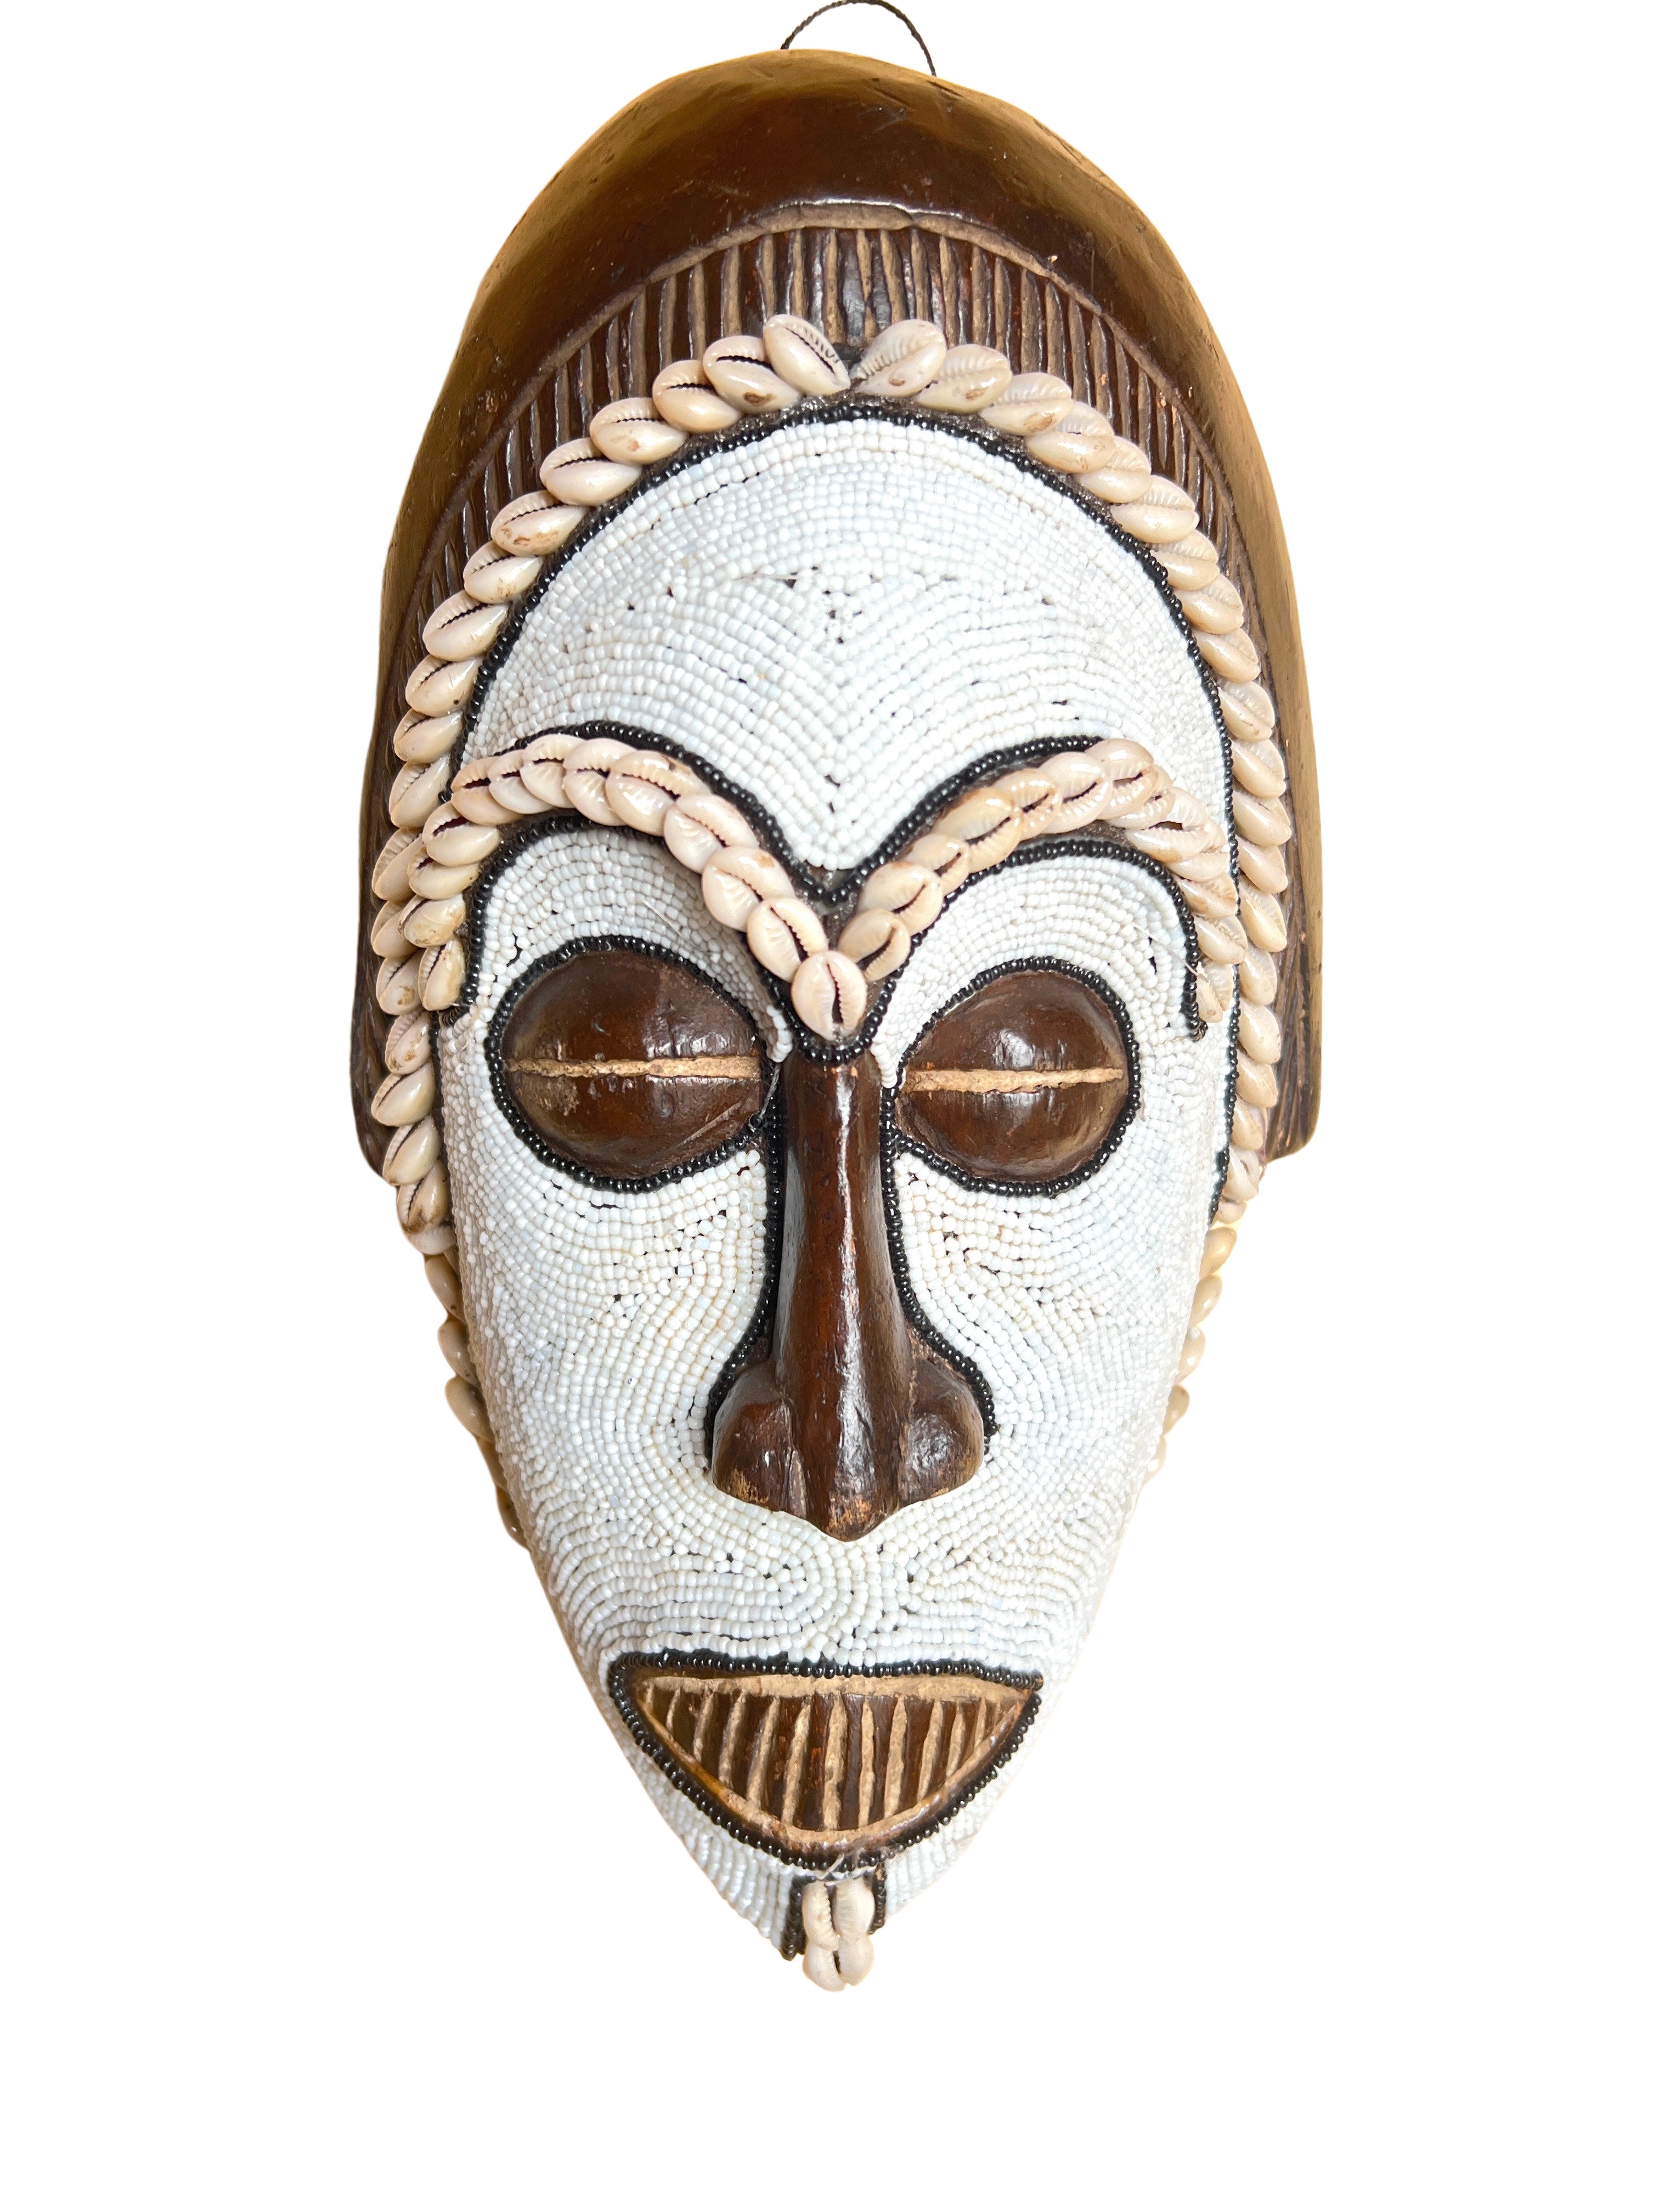 Igbo/Ibo Beaded Mask - Igbo/Ibo